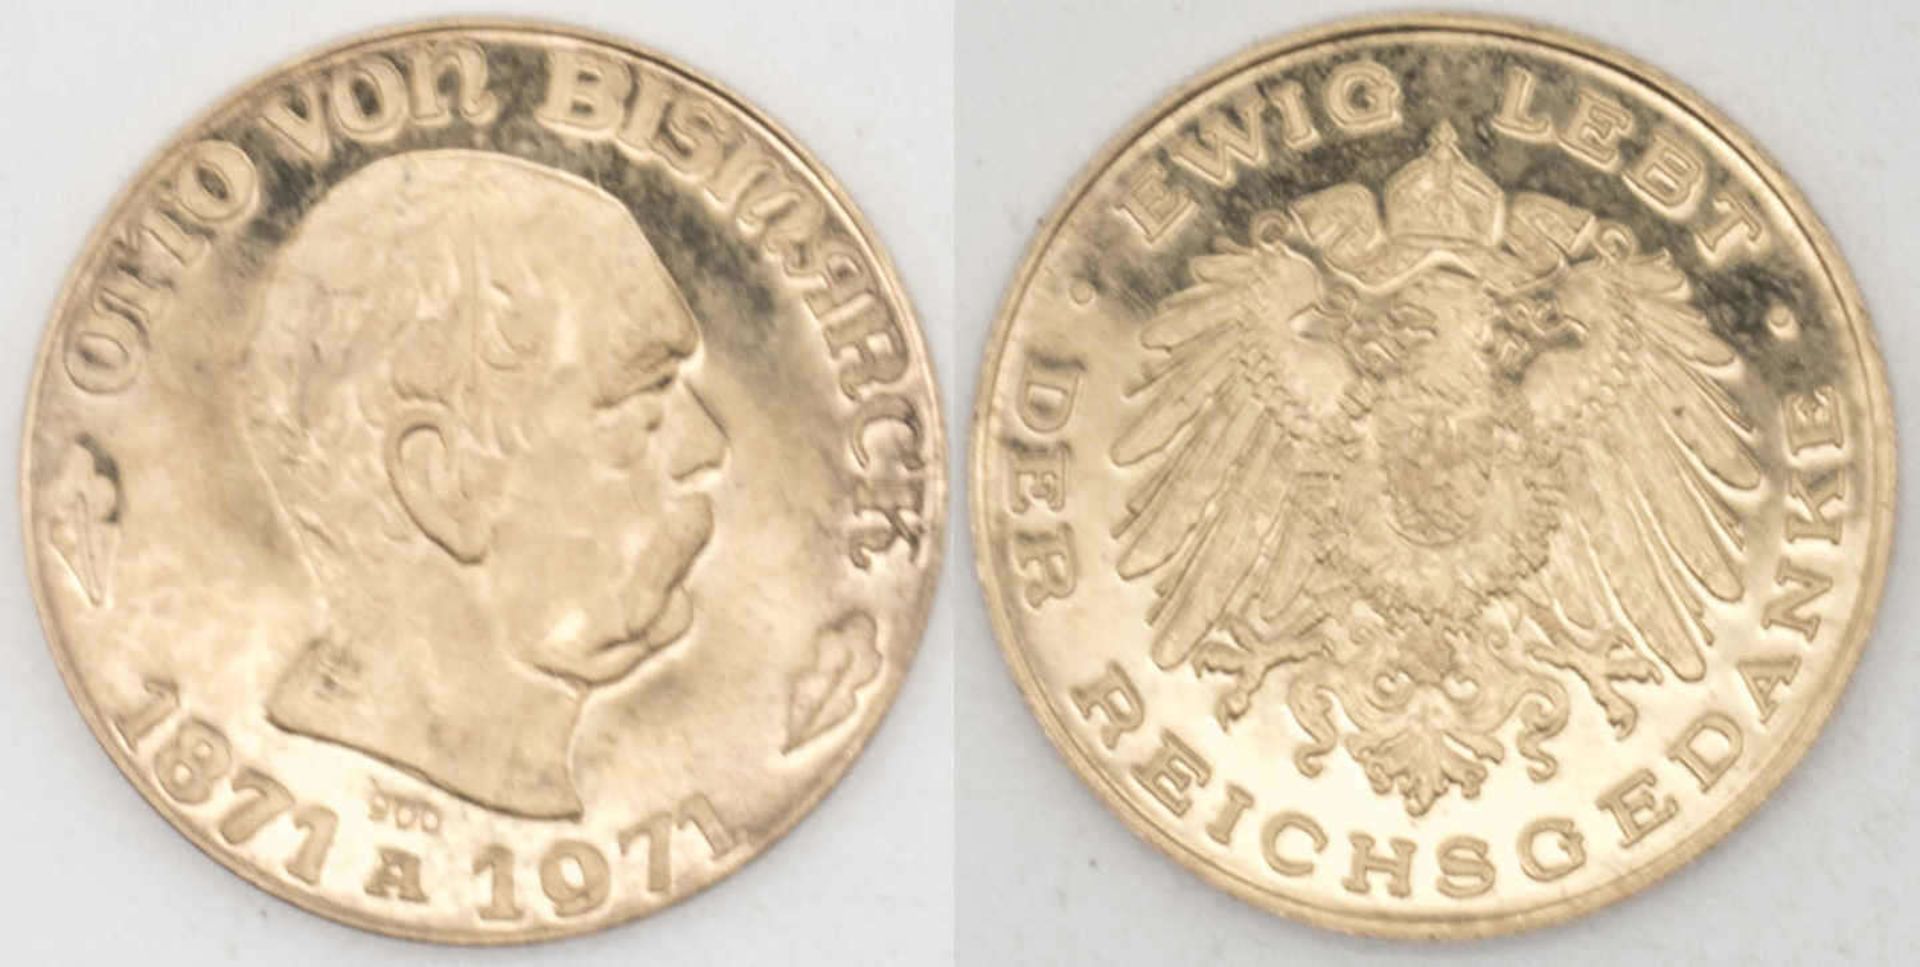 Goldmedaille "Otto von Bismarck" - Ewig lebt der Reichskanzler. Gold 900. Gewicht: ca. 6,5 g.